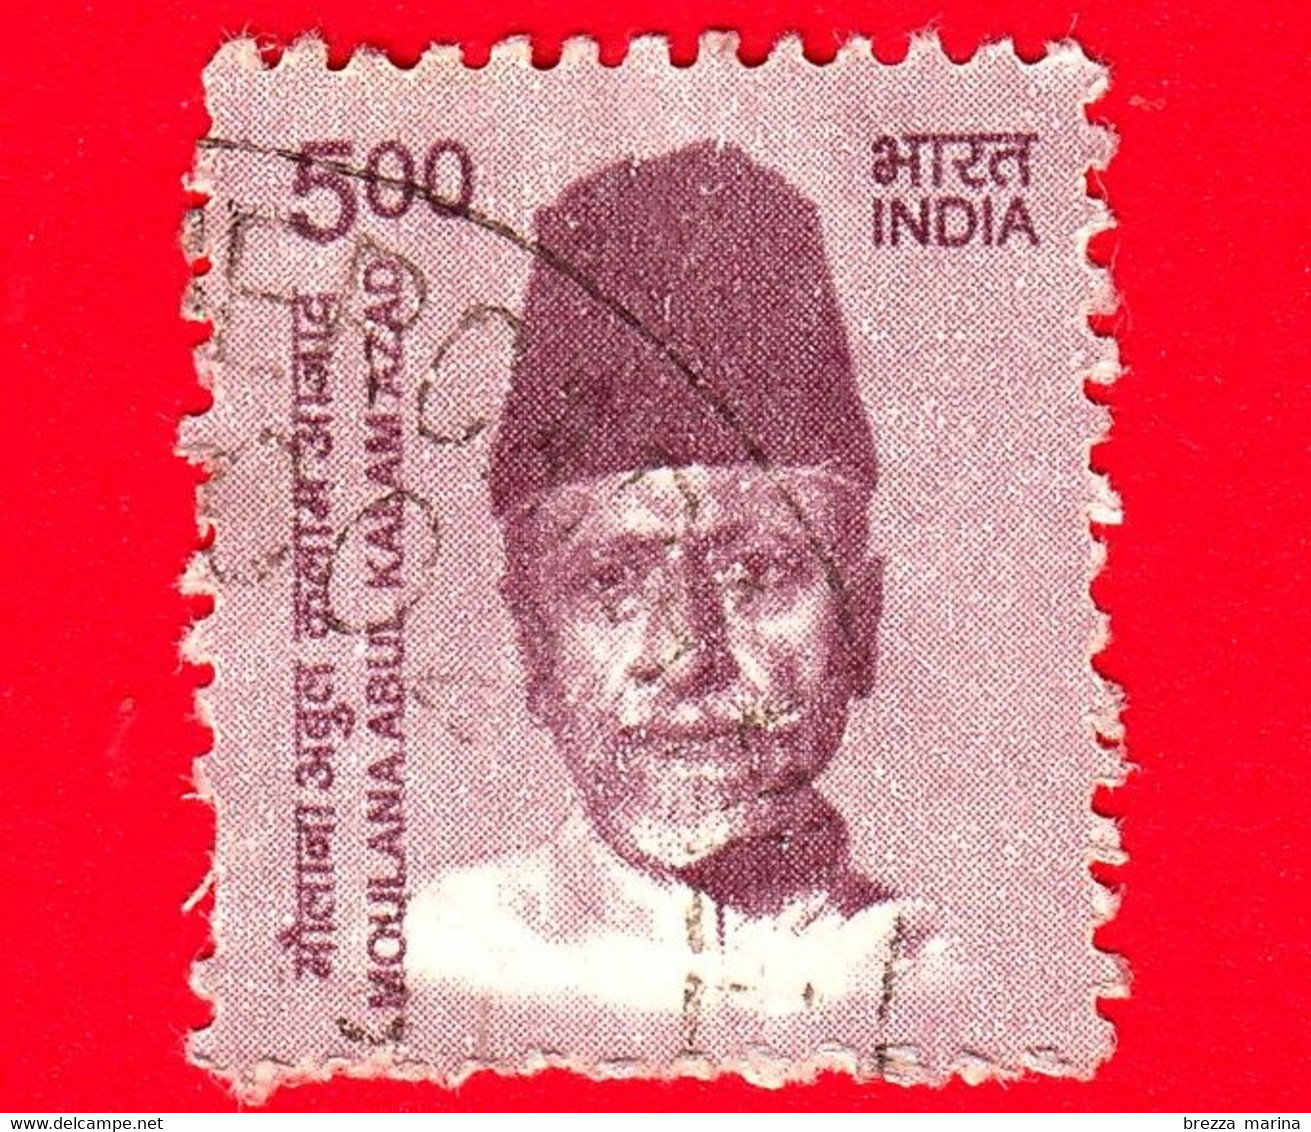 INDIA  - Usato - 2015 - Creatori Dell'India - Moulana Abul Kalam Azad (1888-1958), Politico E Scrittore - 5 - Gebraucht